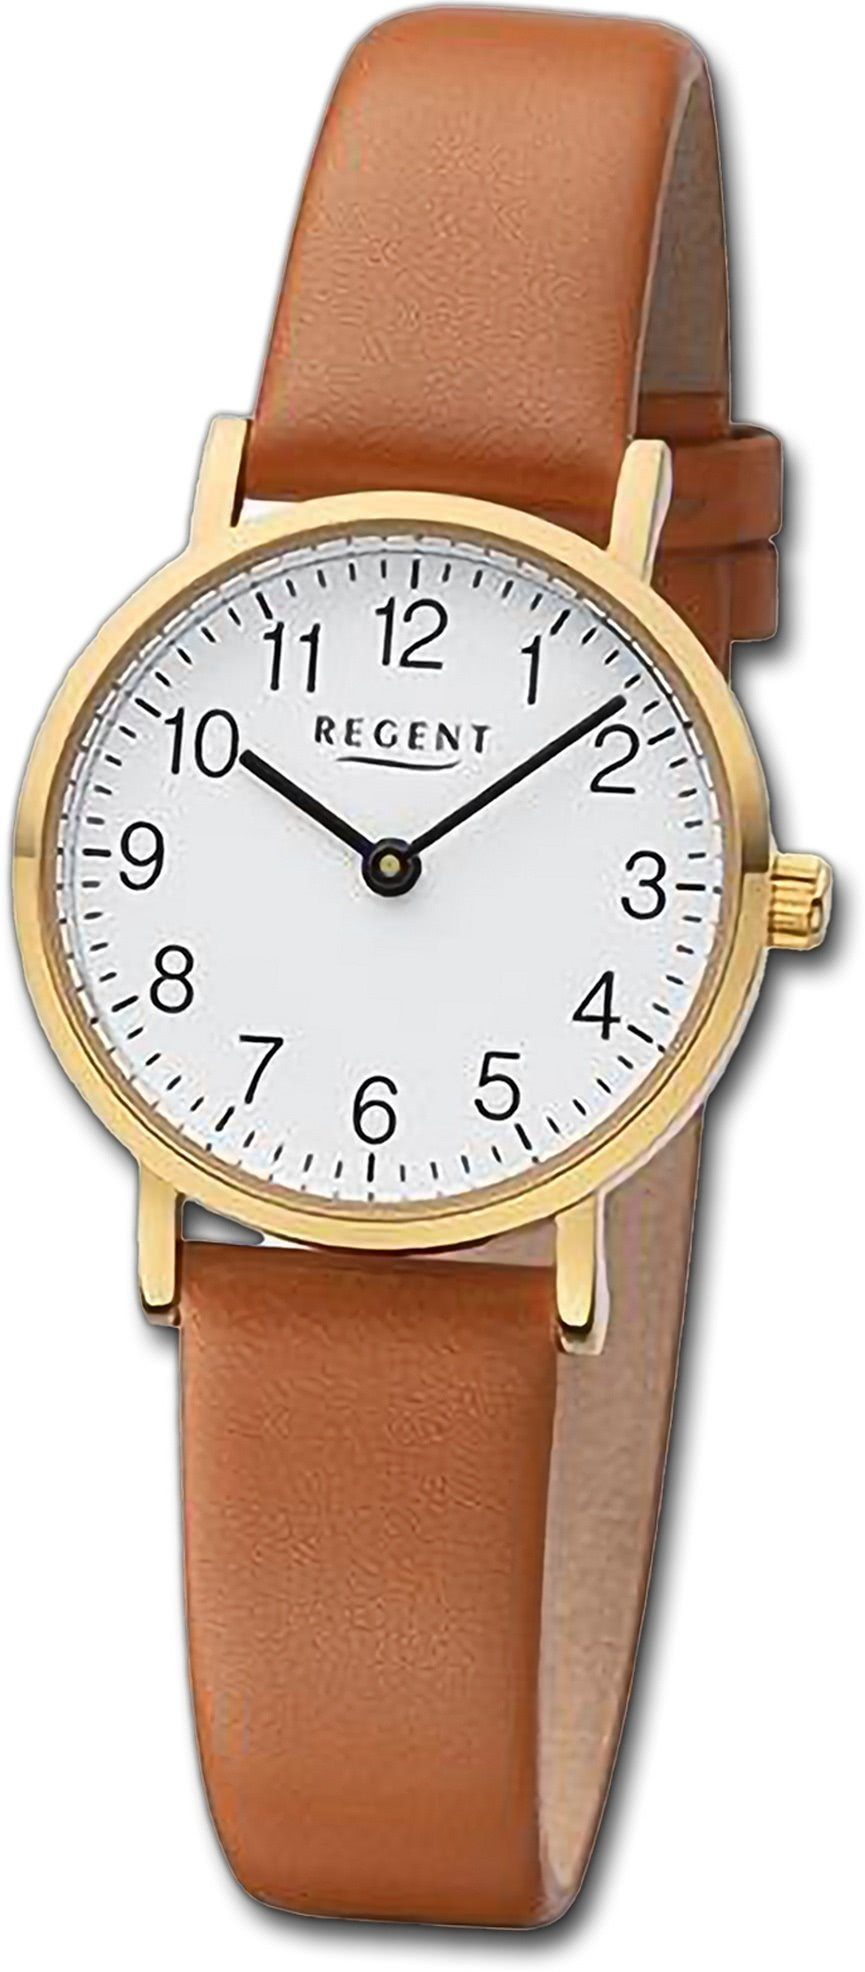 Regent Quarzuhr Regent Damen Armbanduhr Analog, Damenuhr Lederarmband hellbraun, rundes Gehäuse, extra groß (ca. 28mm)